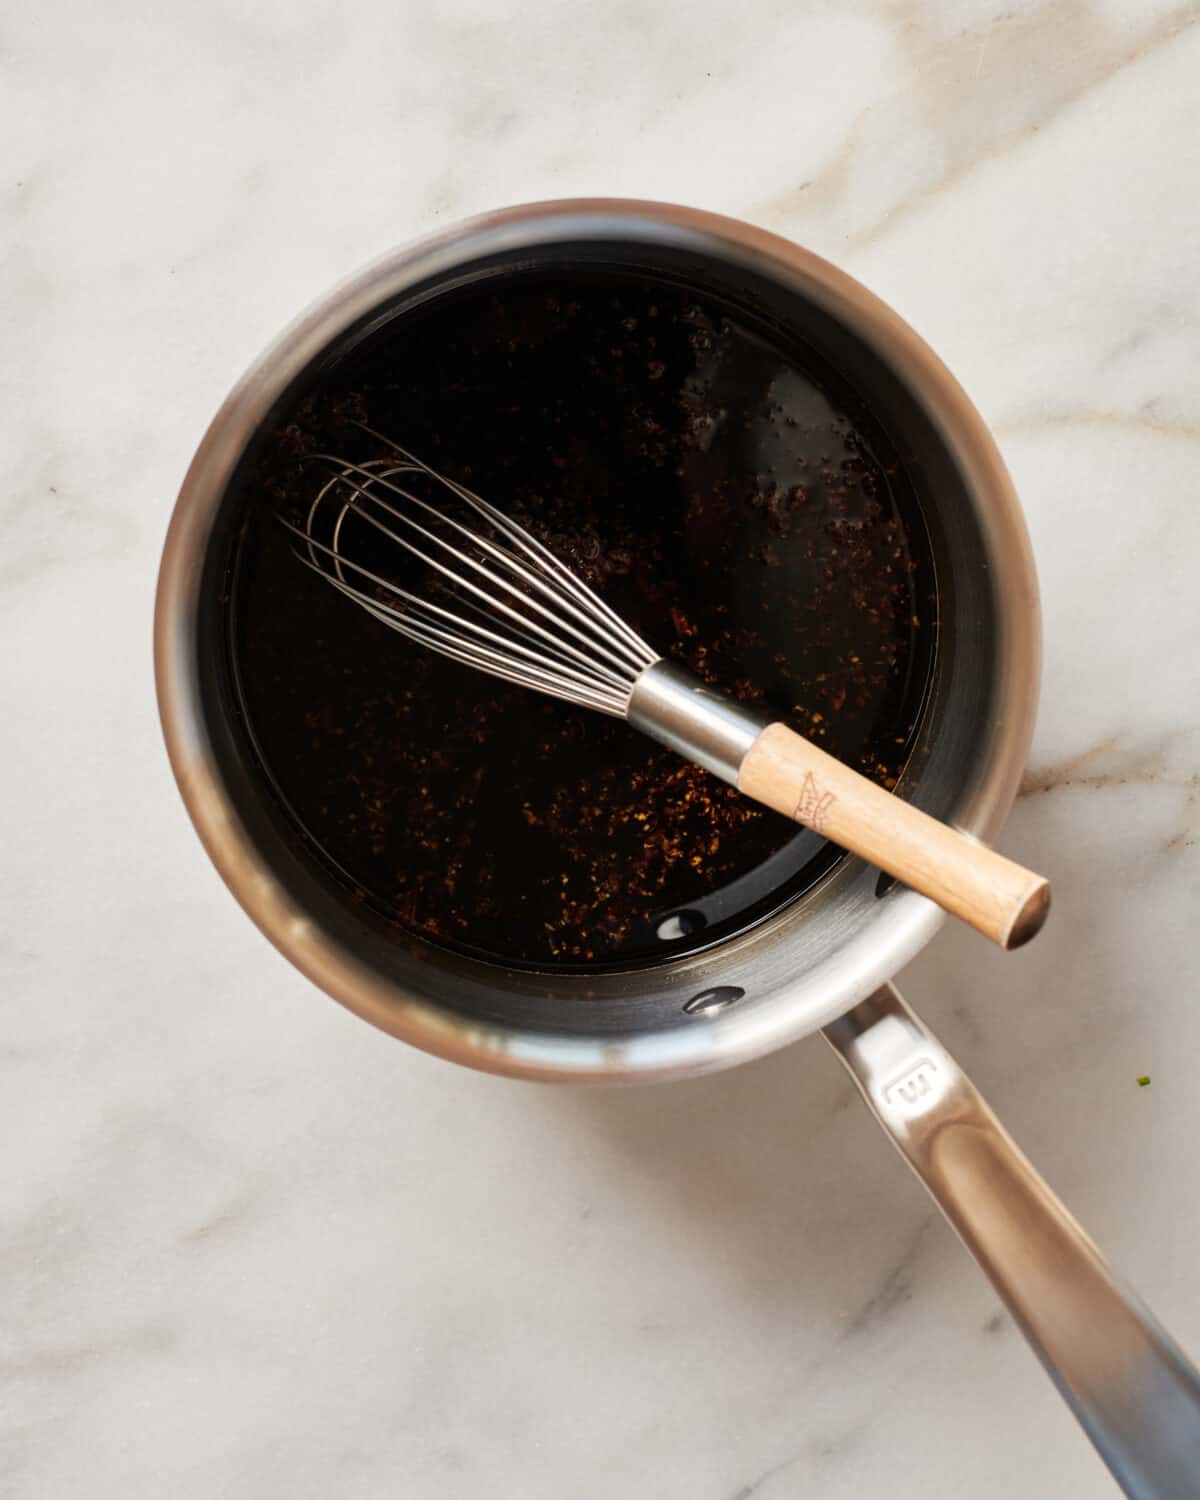 Homemade Teriyaki sauce thickening in pan. 